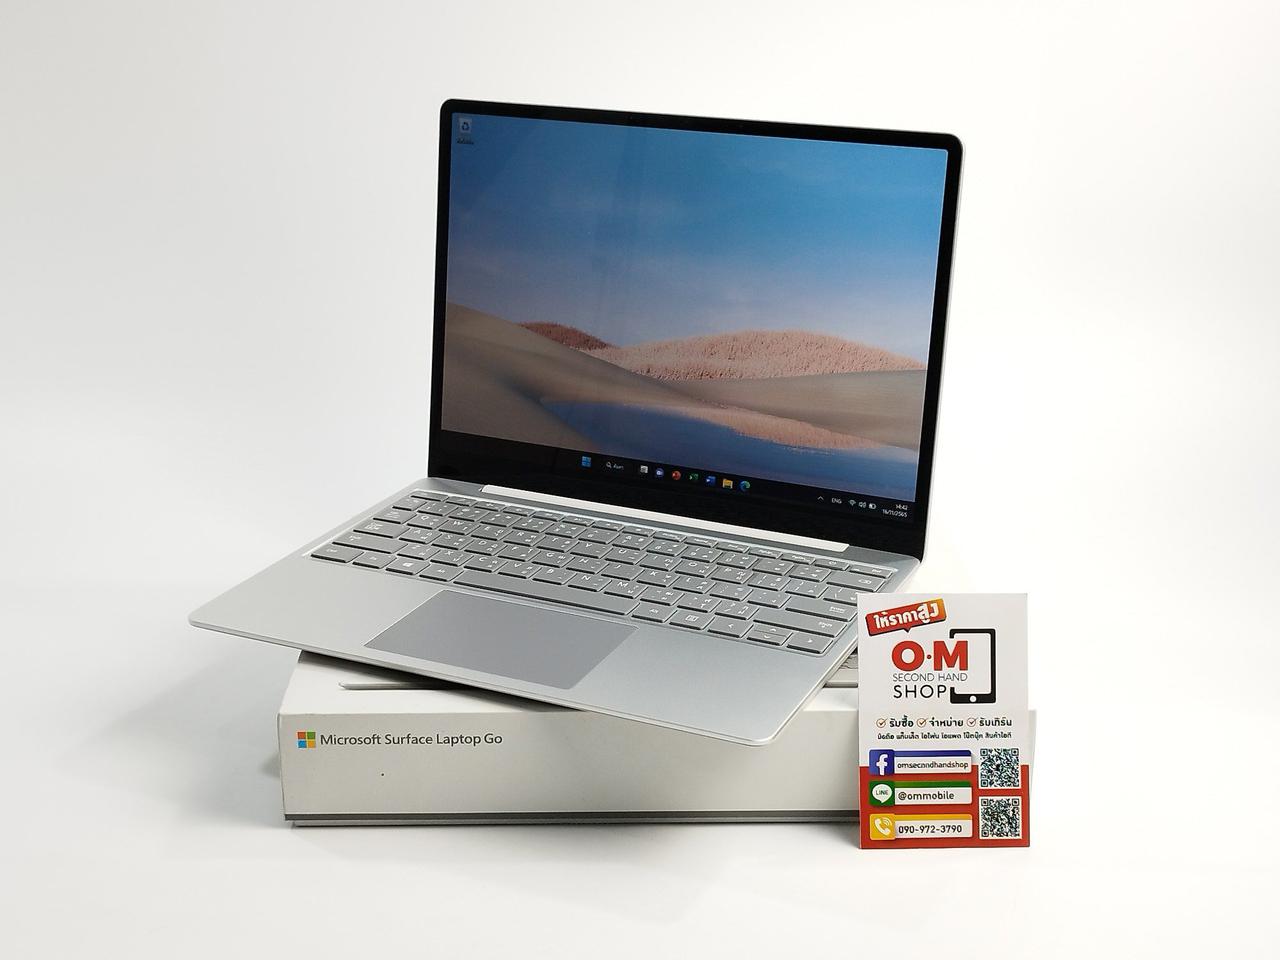 ขาย/แลก Microsoft Surface Laptop Go i5-1035G1 4/64 จอ Touchscreen ศูนย์ไทย สวยมาก ครบกล่อง เพียง 12,900 บาท  รูปที่ 2